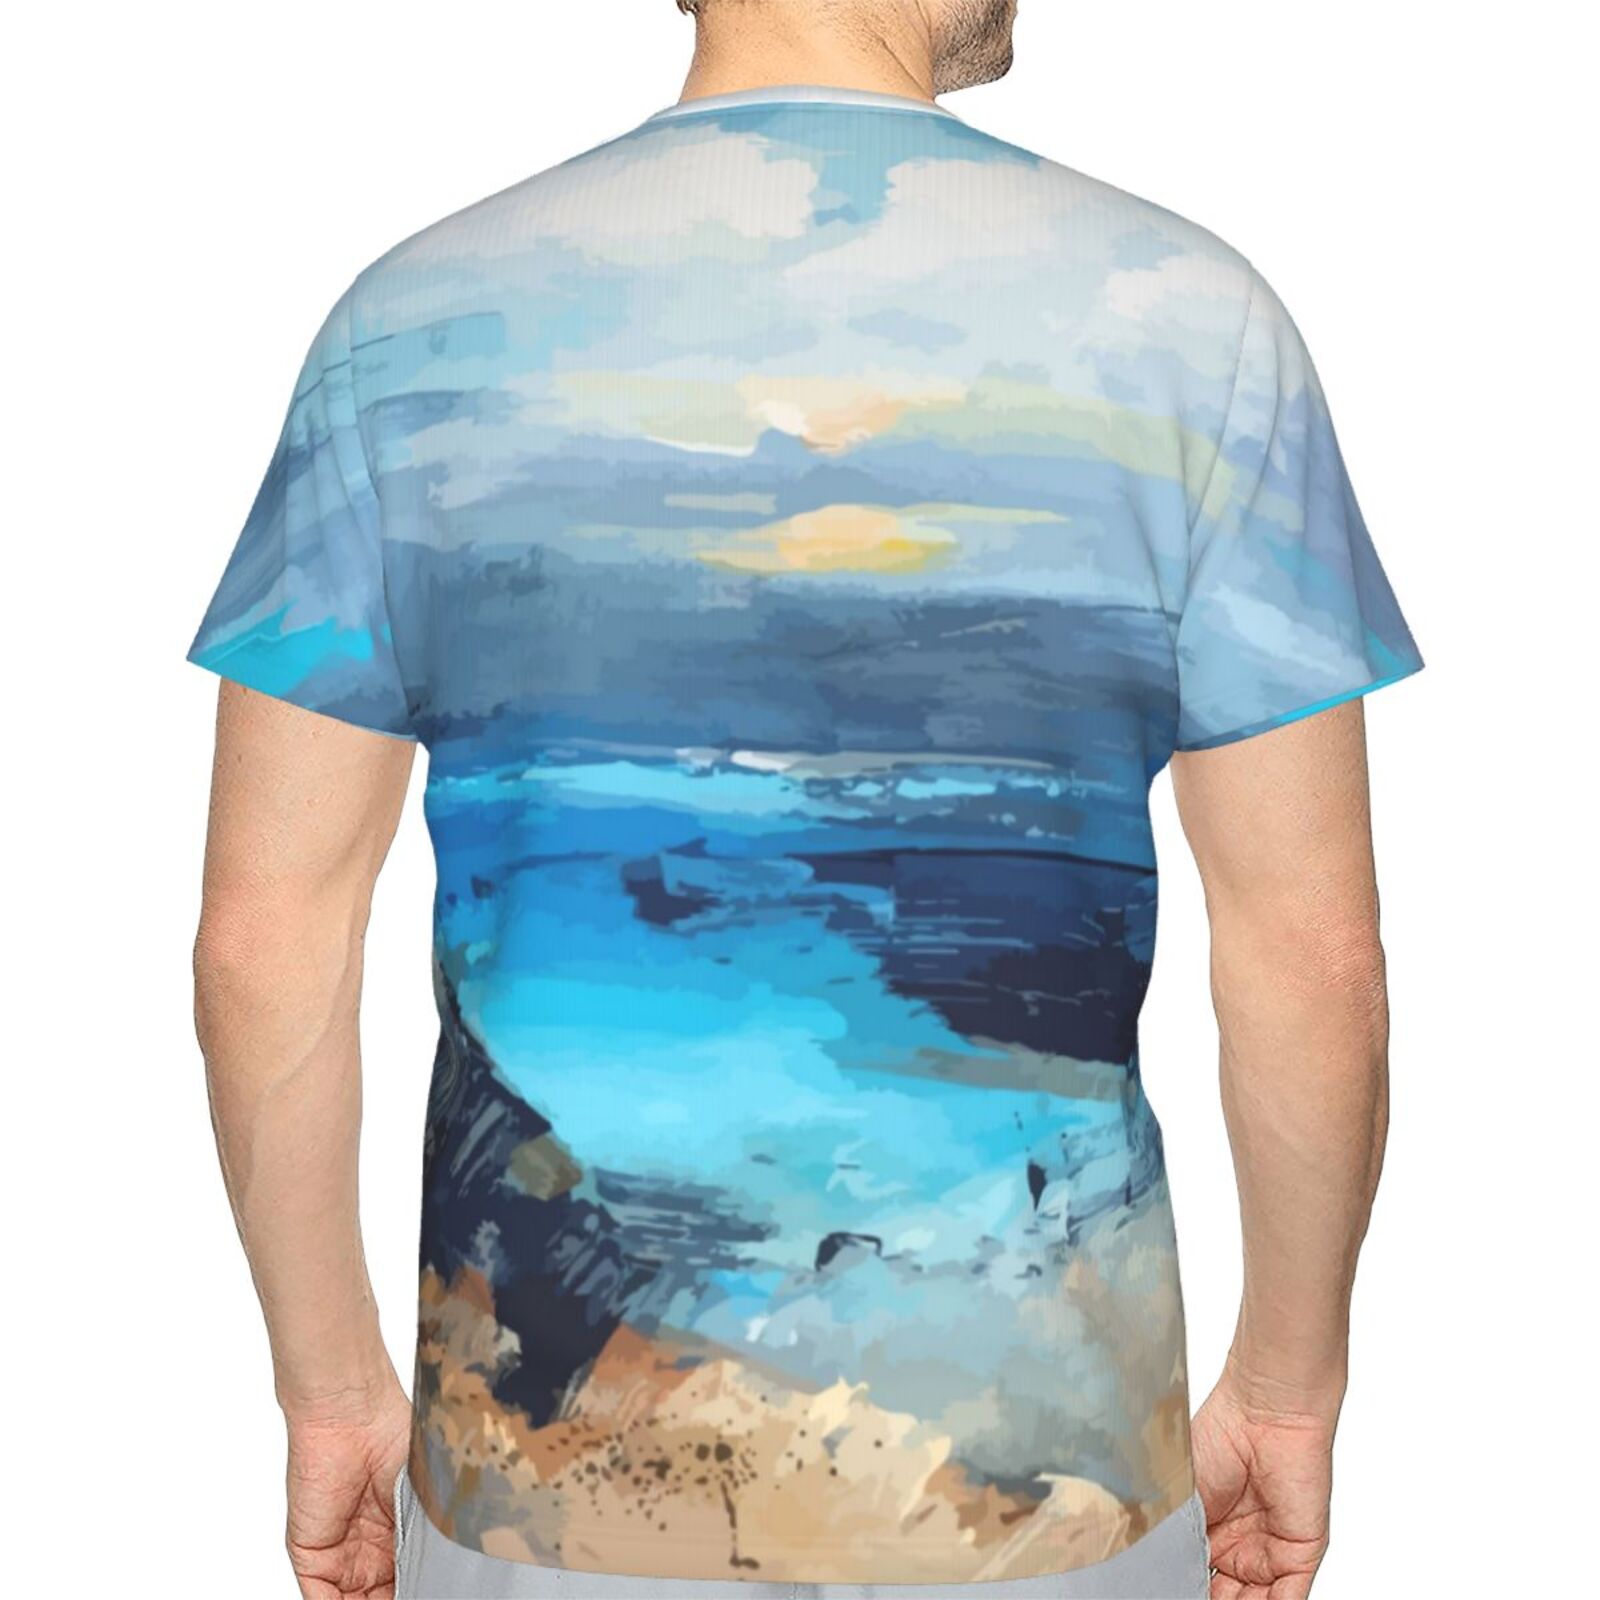 Klassisches Österreich T-shirt Mit Kleinen Bucht-malelementen